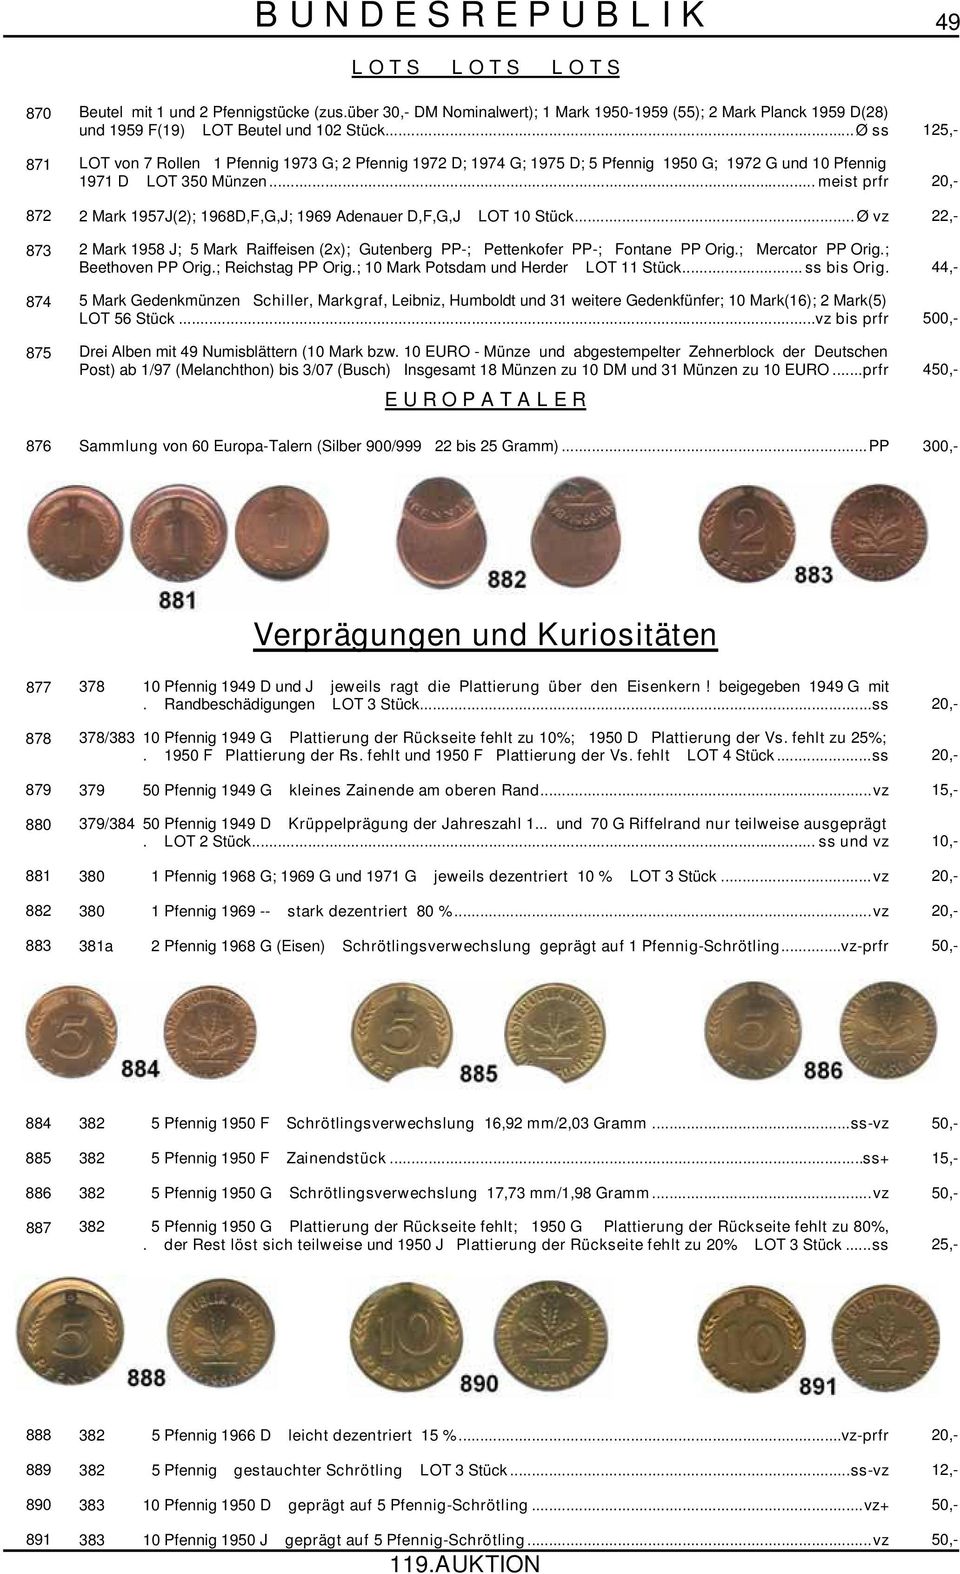 ..Ø ss 125,- 871 LOT von 7 Rollen 1 Pfennig 1973 G; 2 Pfennig 1972 D; 1974 G; 1975 D; 5 Pfennig 1950 G; 1972 G und 10 Pfennig 1971 D LOT 350 Münzen.